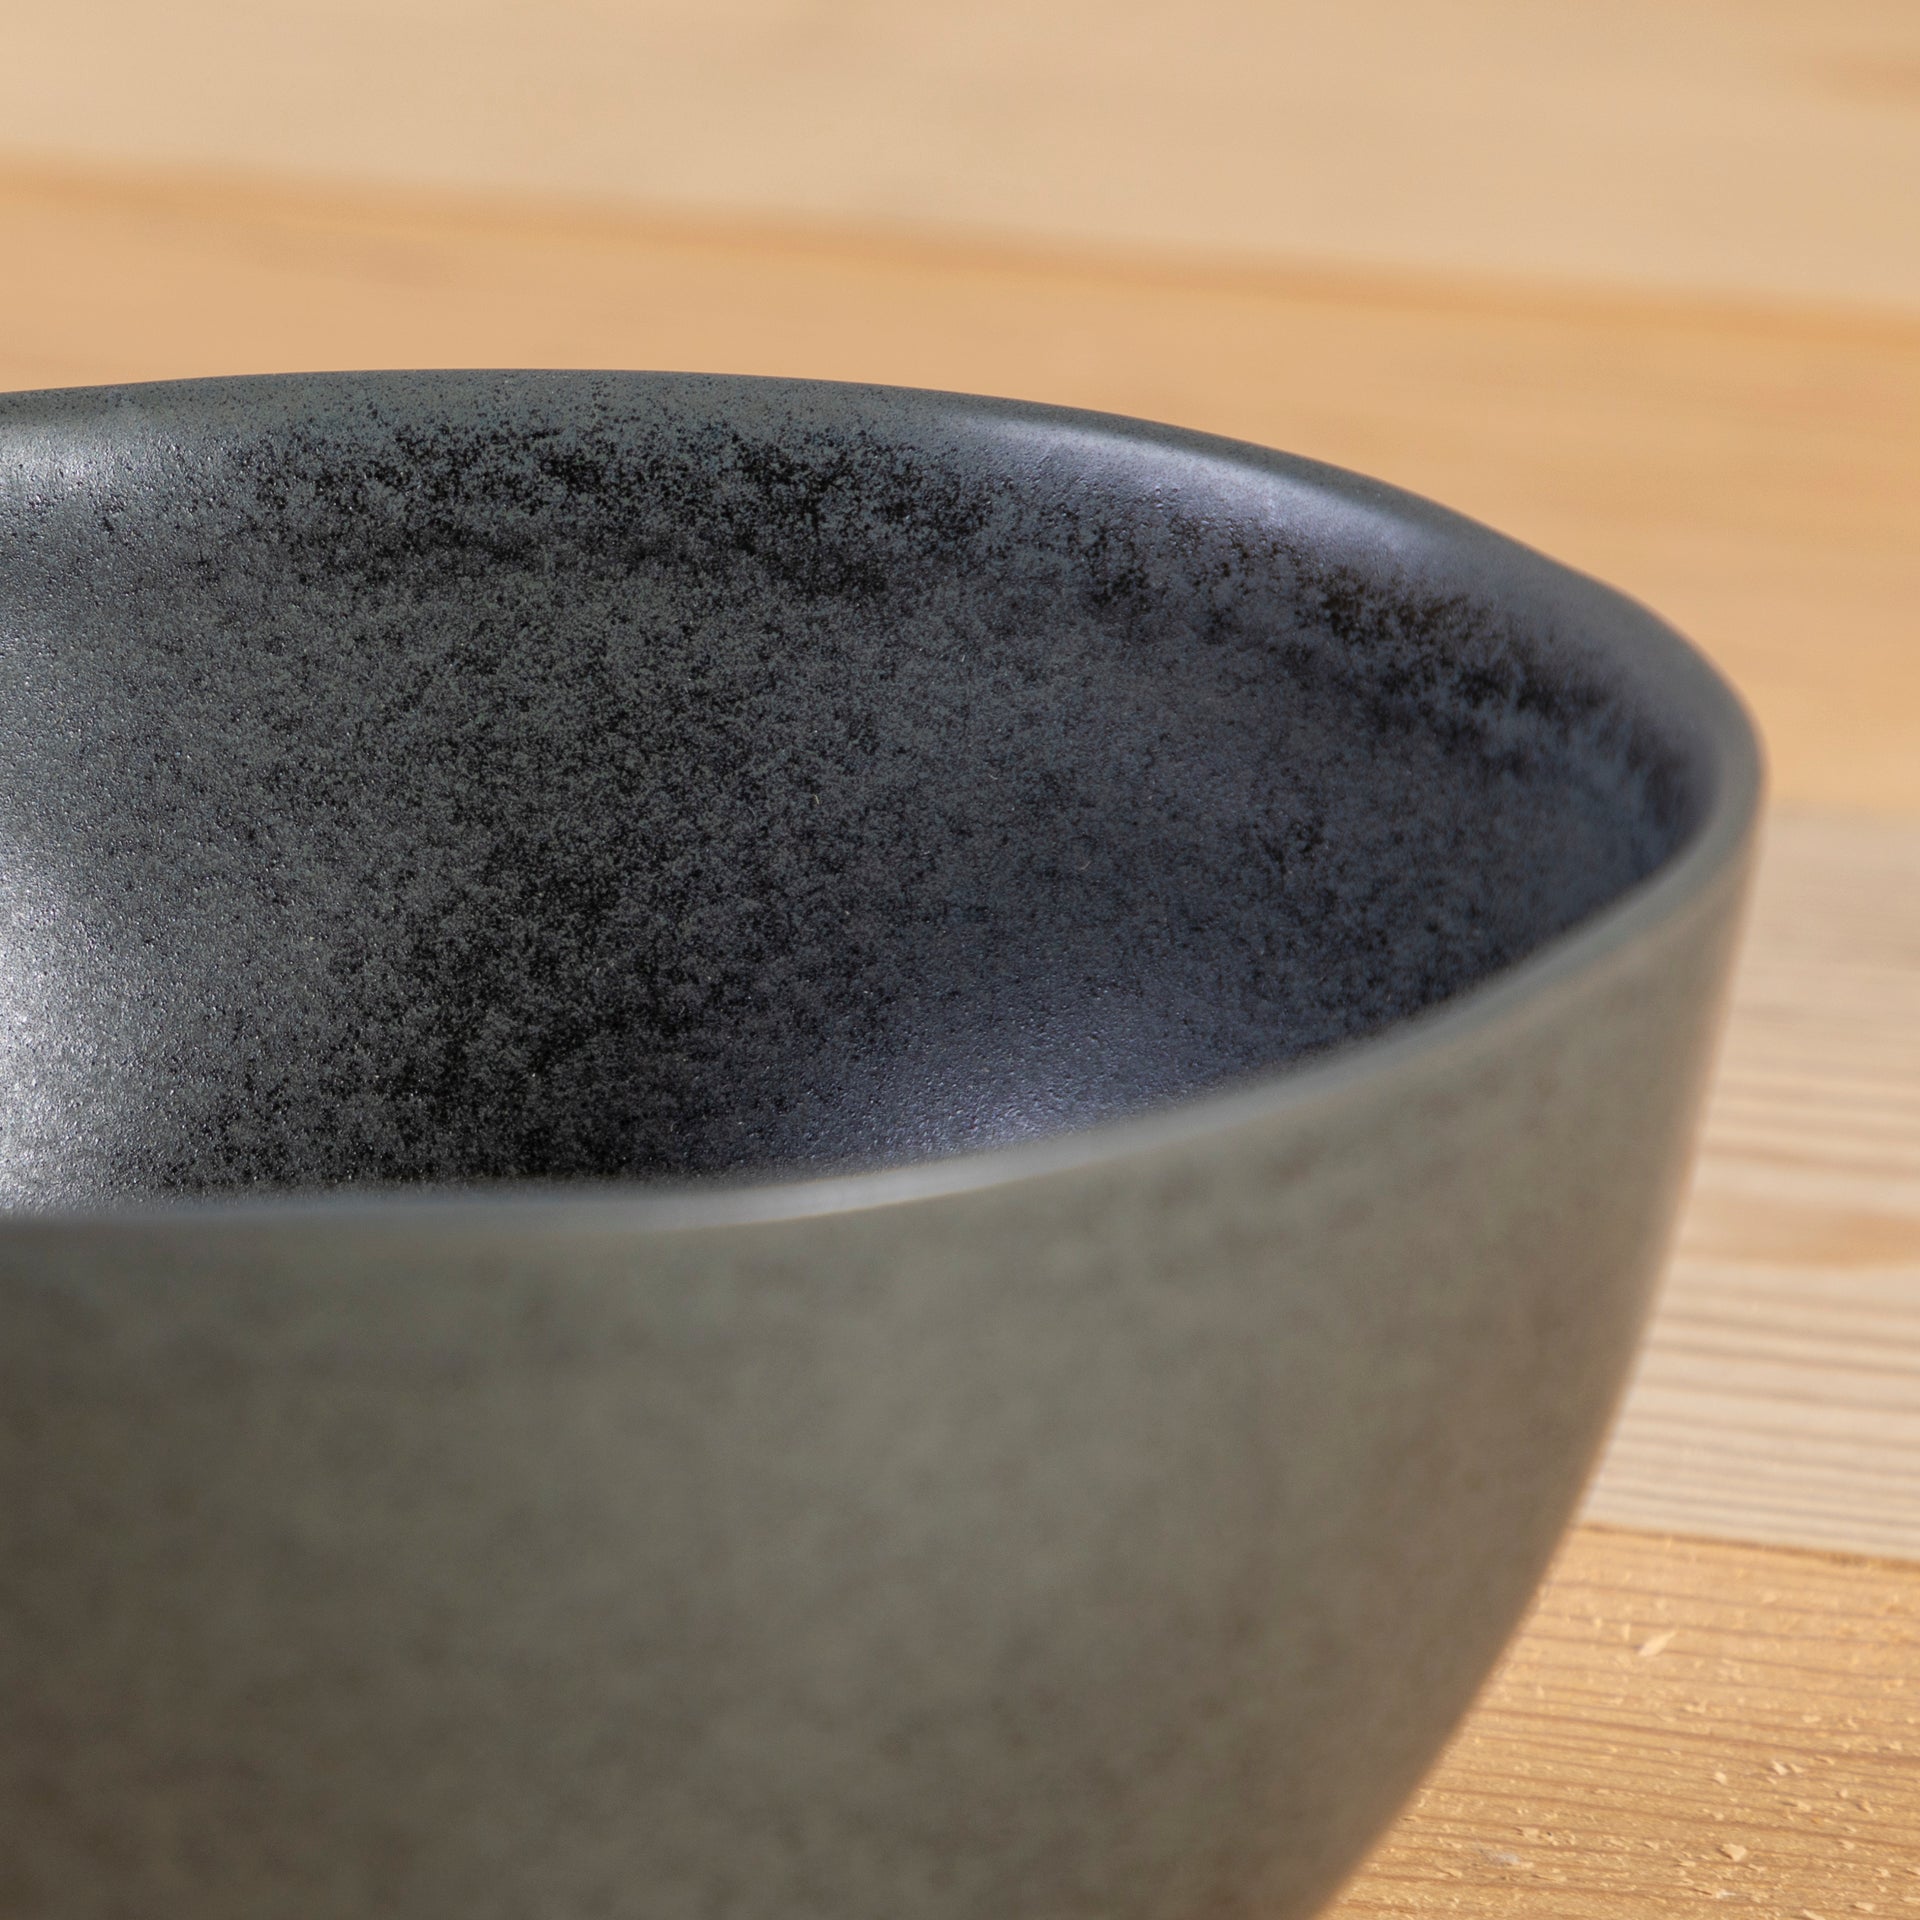 Livia Soup / Cereal Bowl, Black, Set of 6